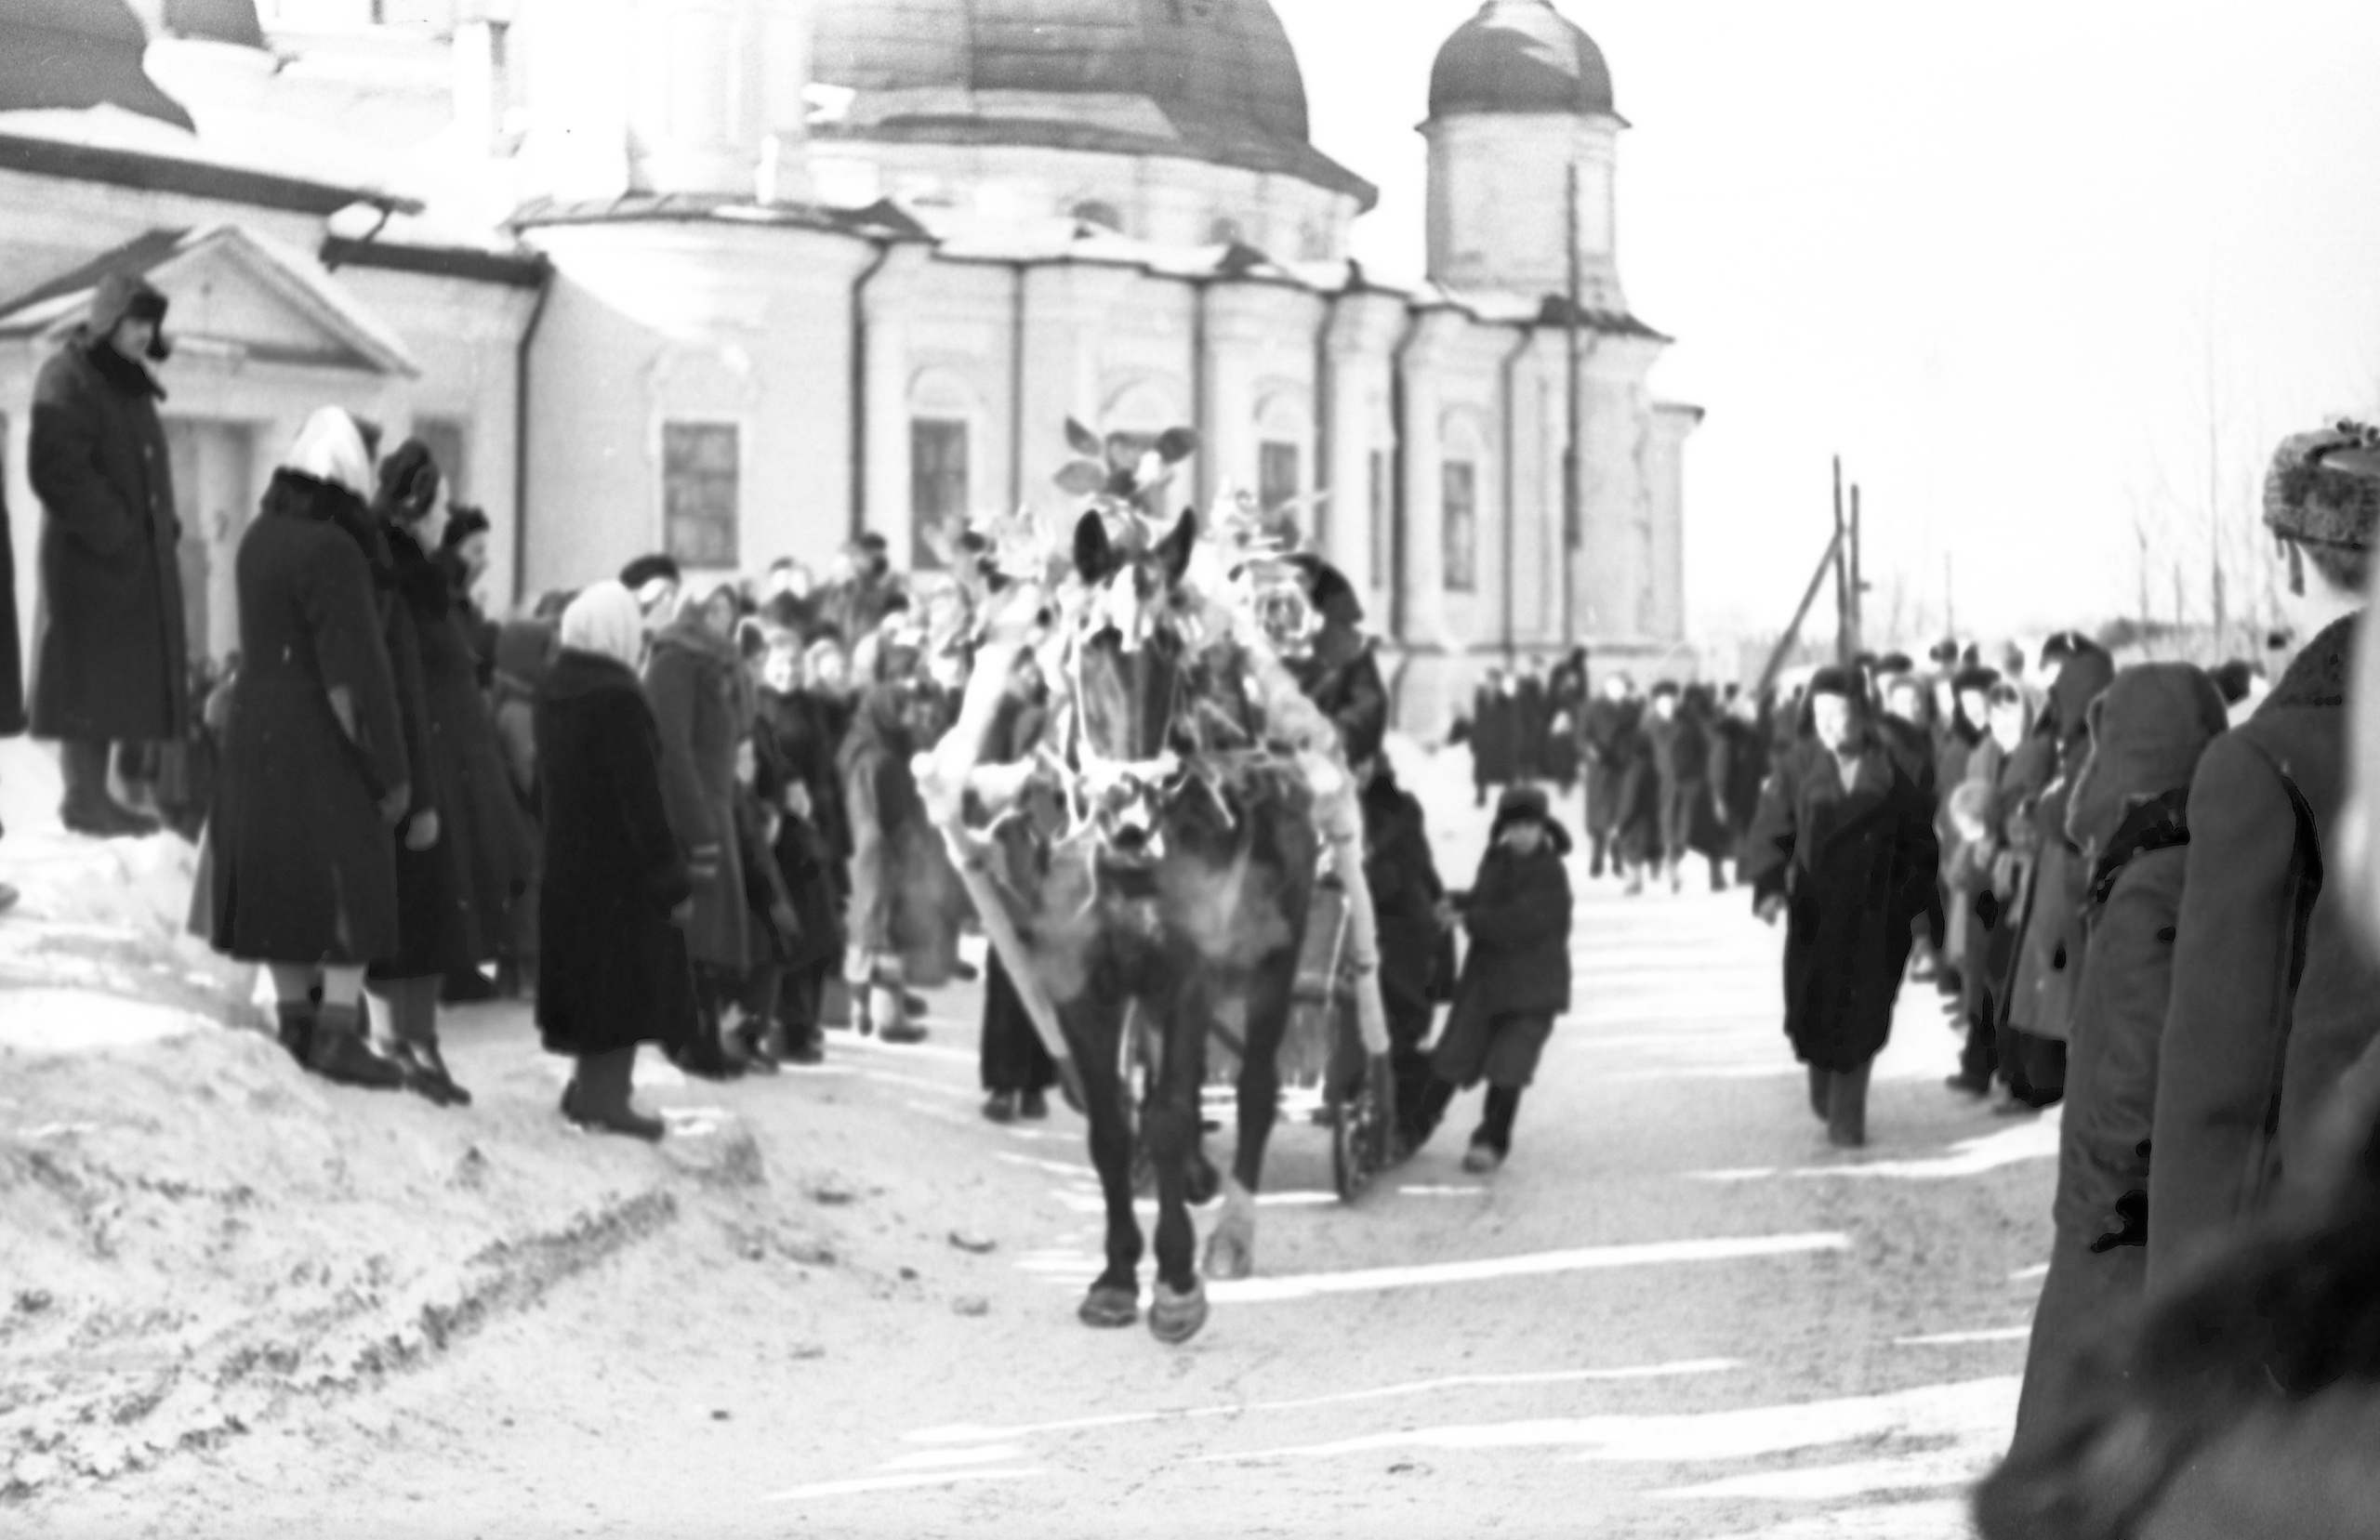 Кремлевская площадь. Катание на лошадях. 1960 гг.